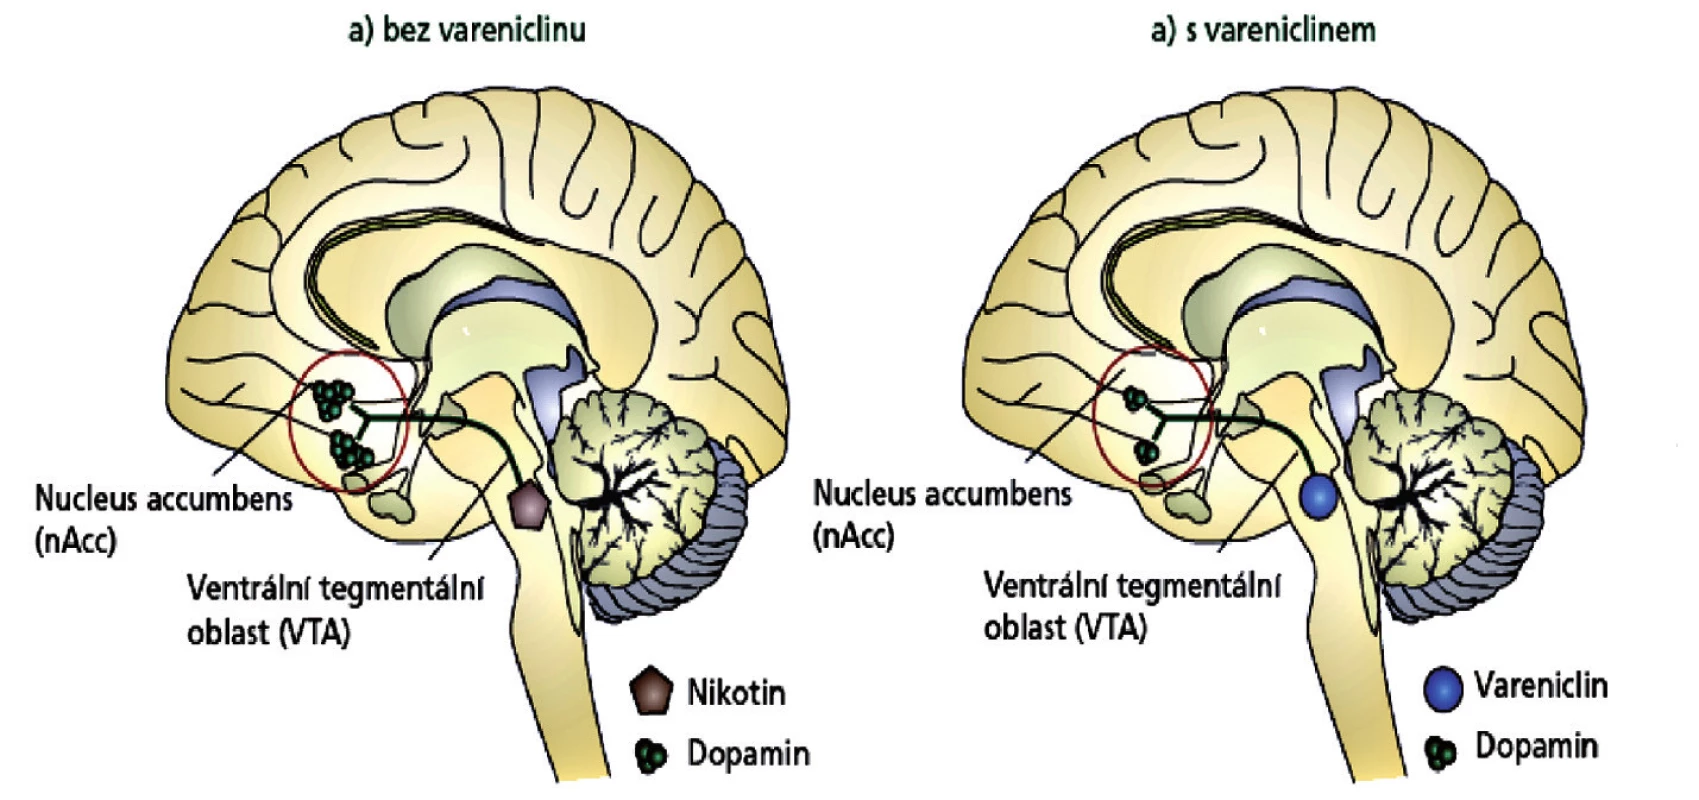 Mechanismus účinku vareniclinu v mozku